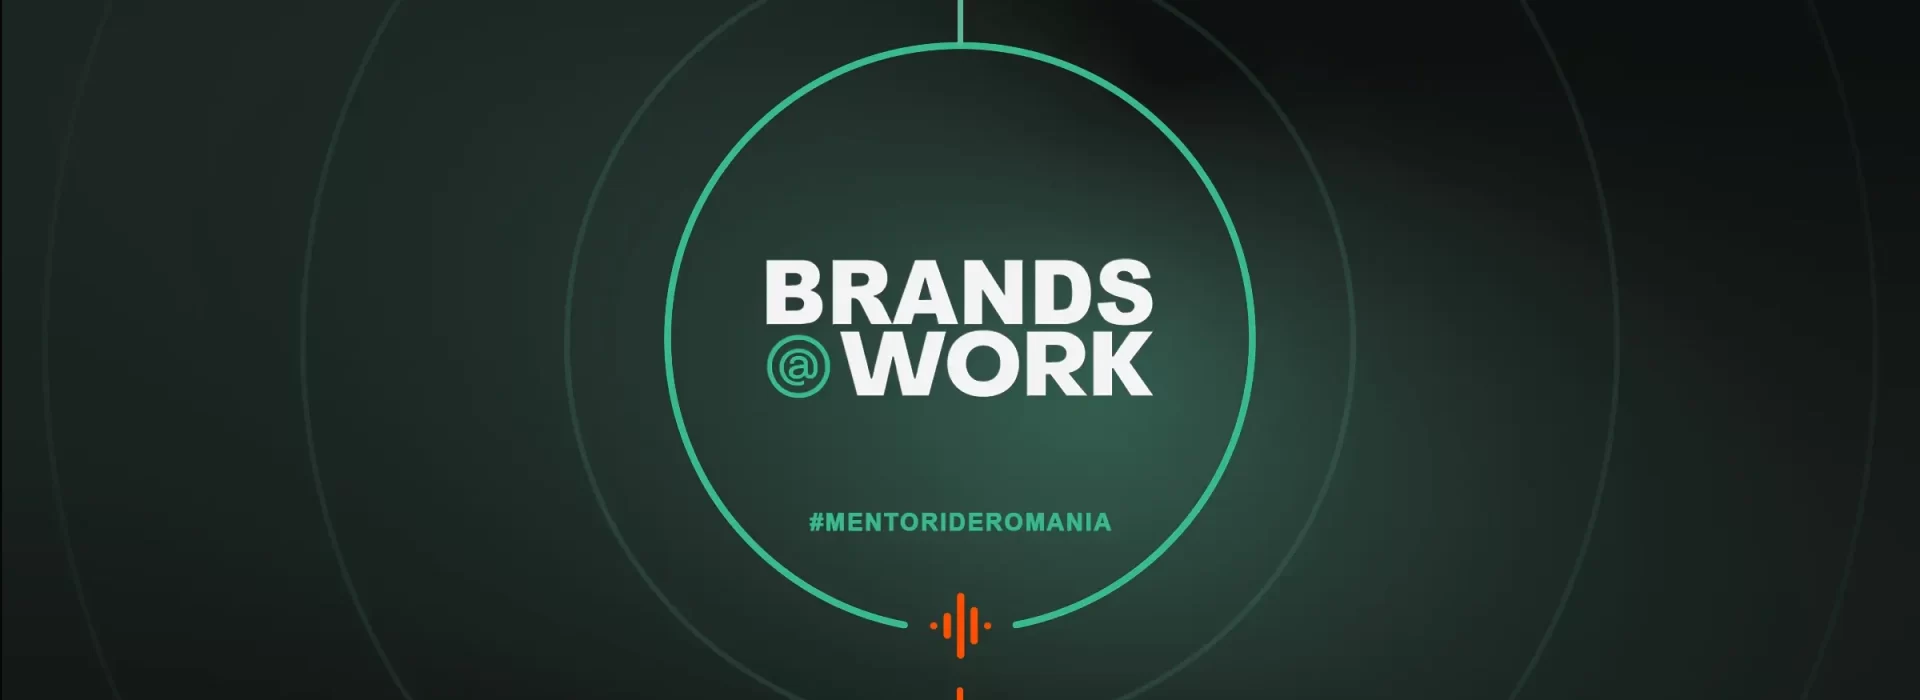 Brands at Work Podcasturi Romanesti